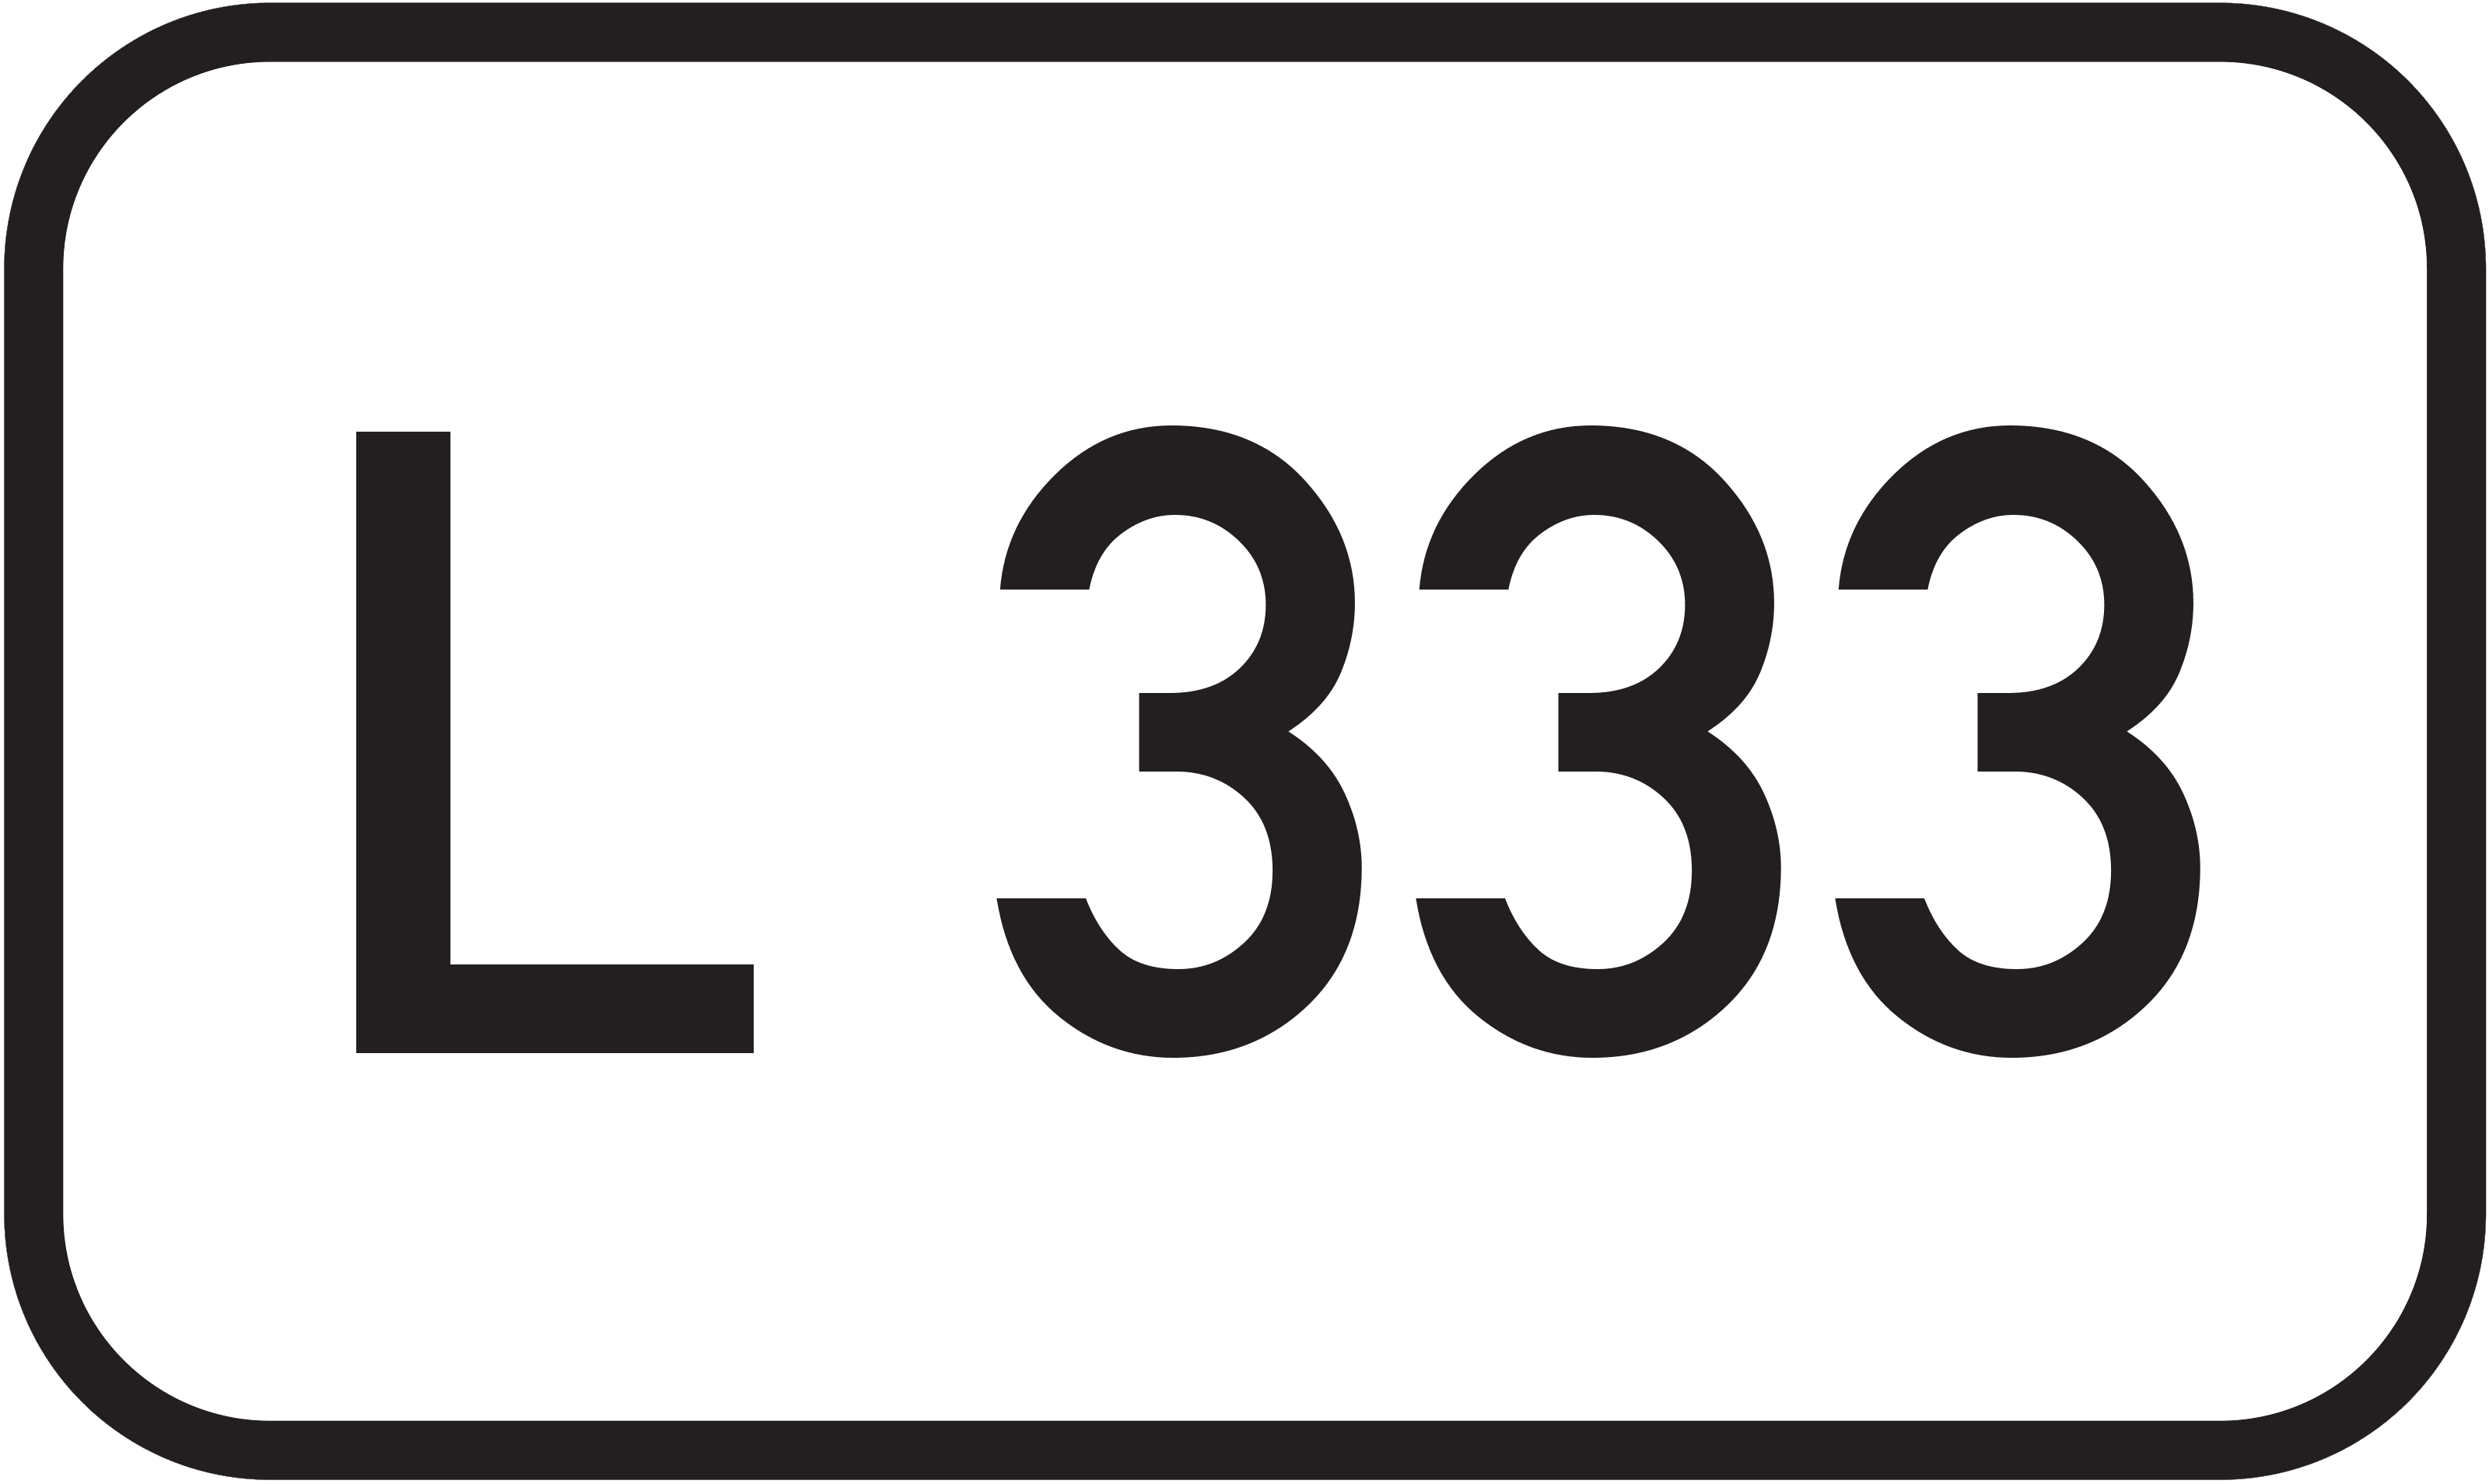 Landesstraße L 333